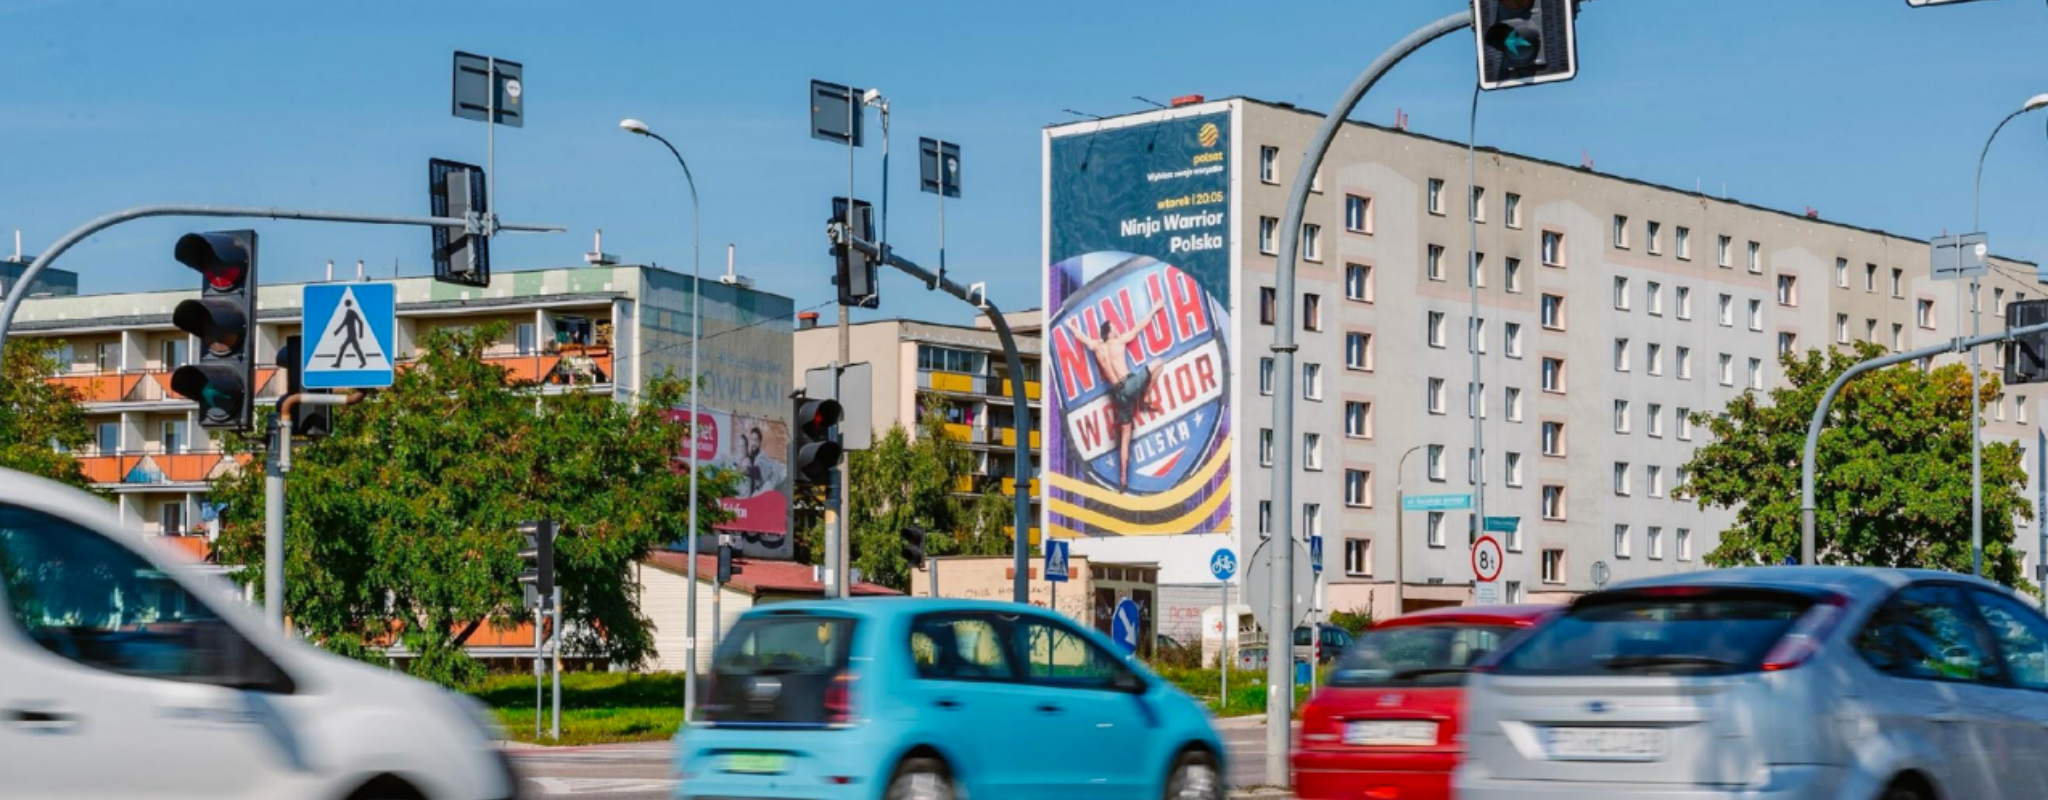 Żeromskiego Białystok reklama